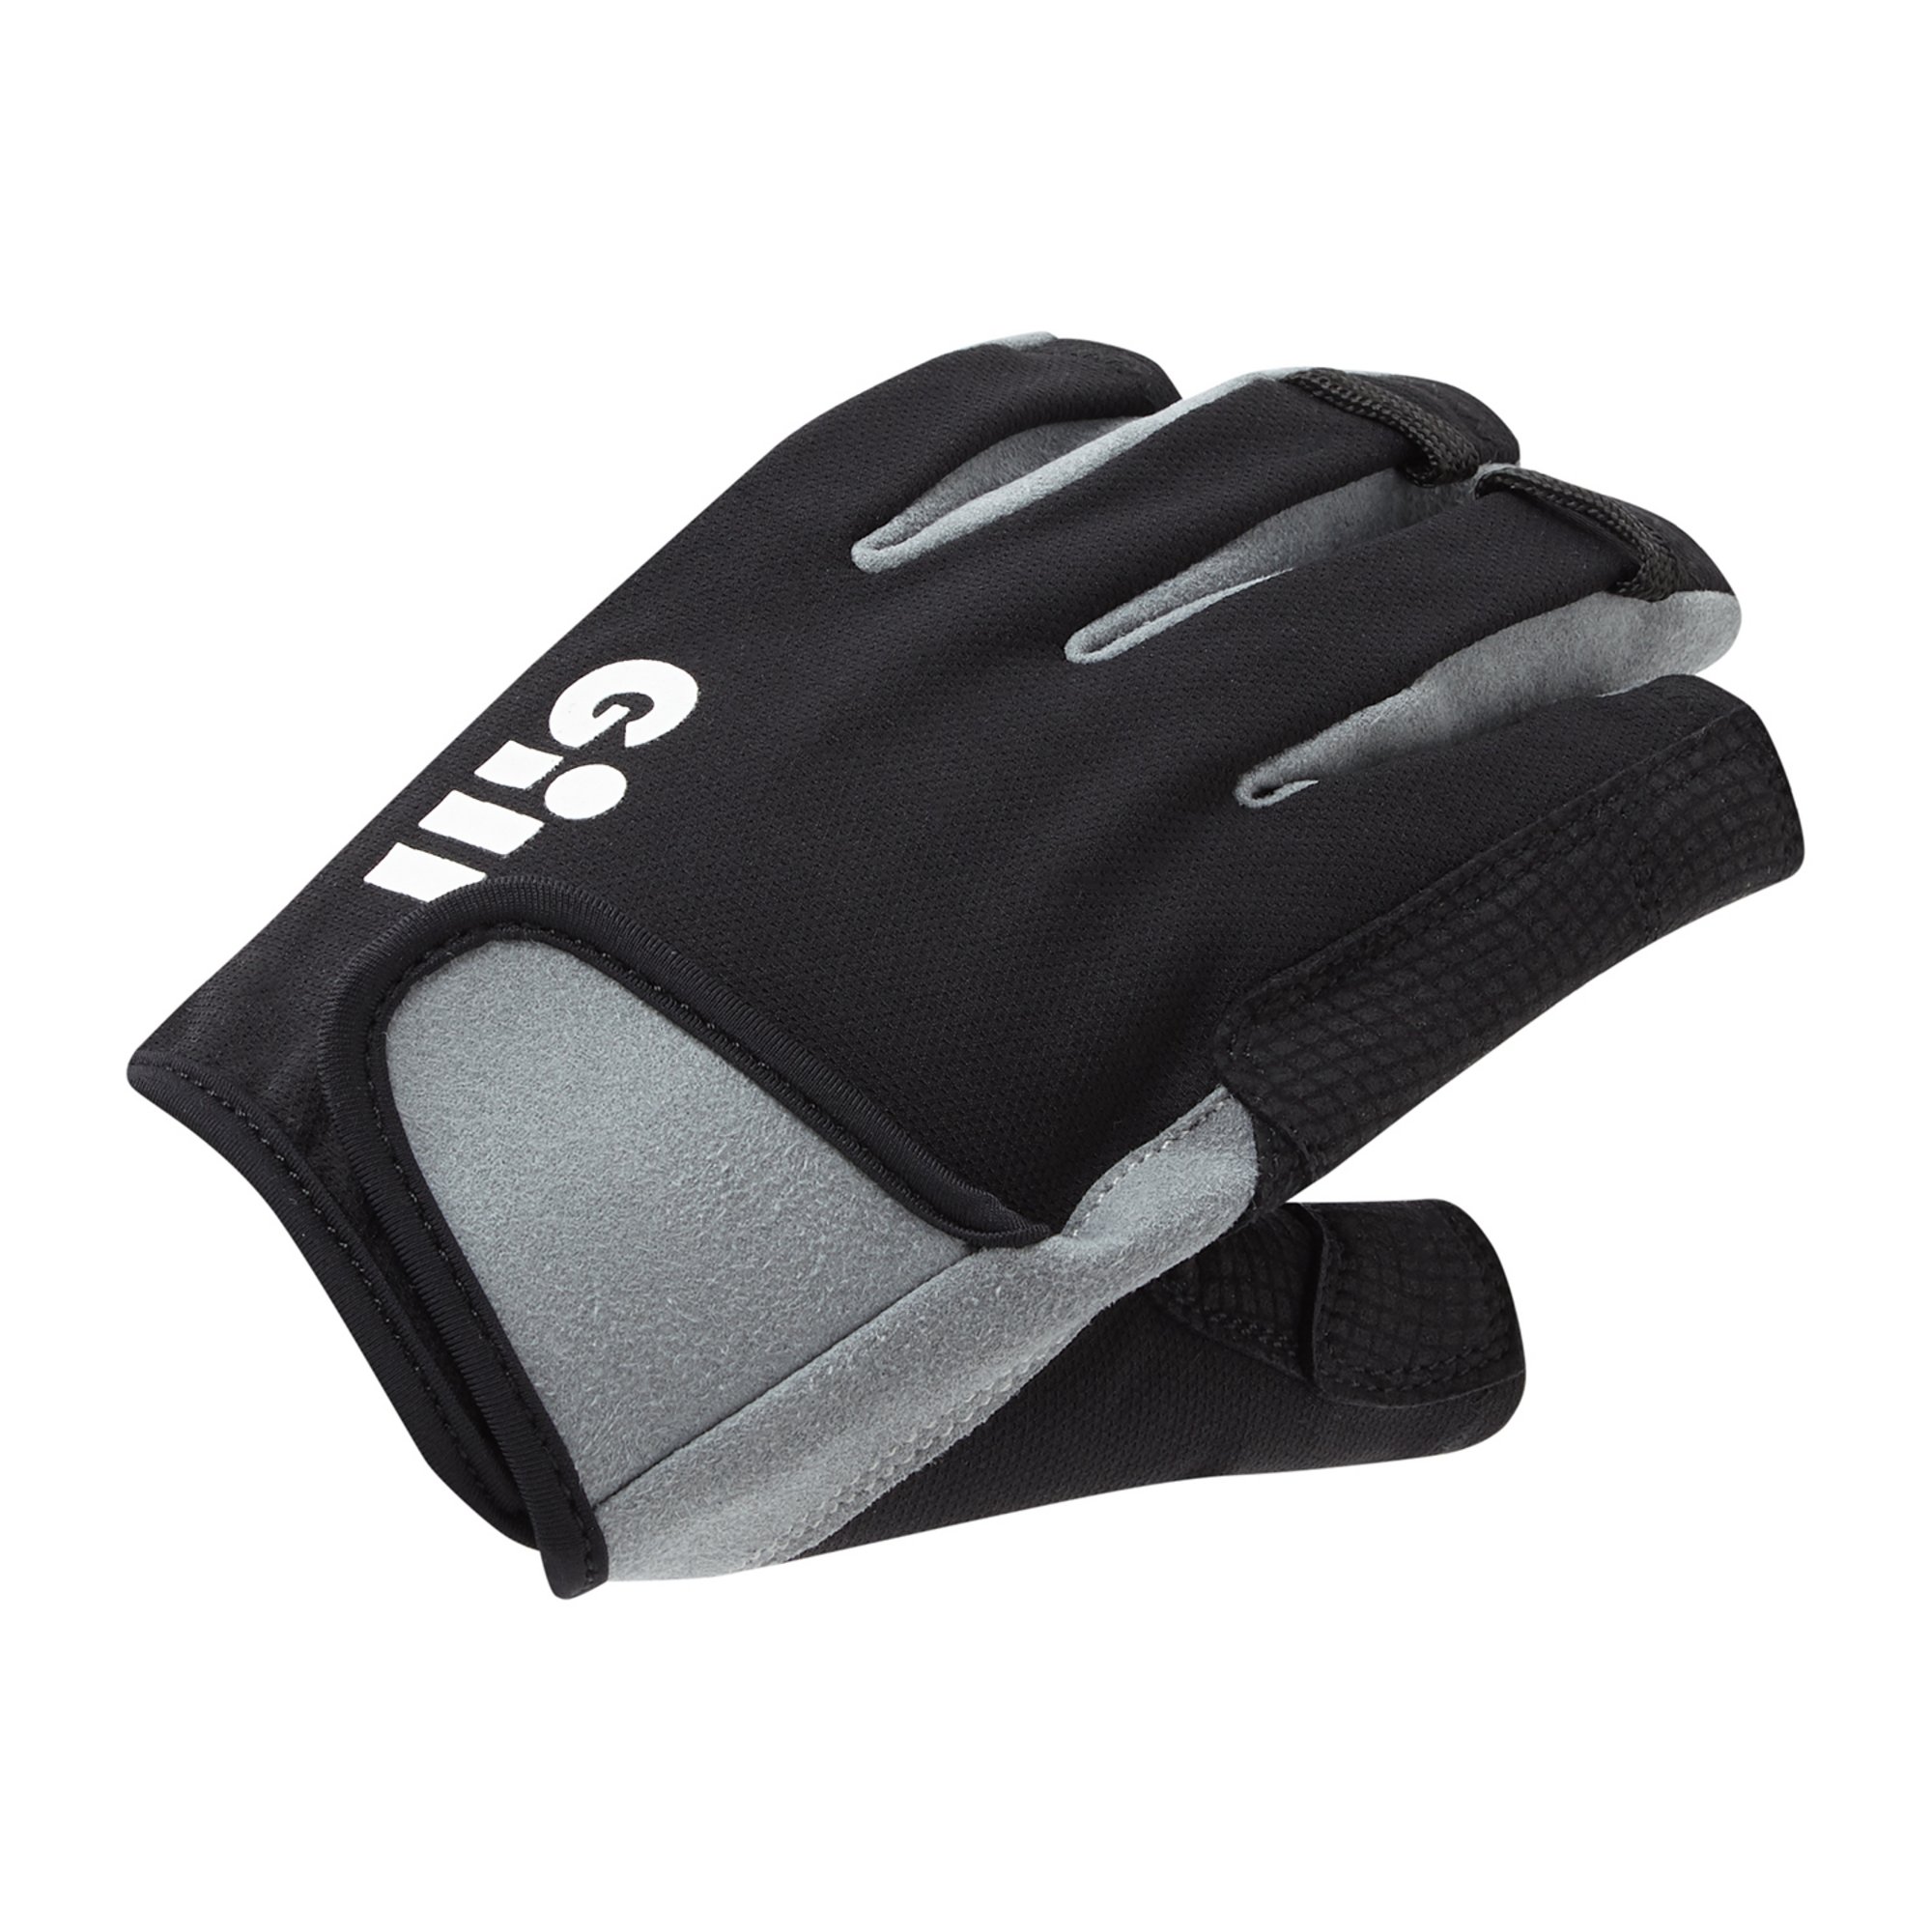 Deckhand Gloves - Short Finger - 7043-BLK01_1.jpg